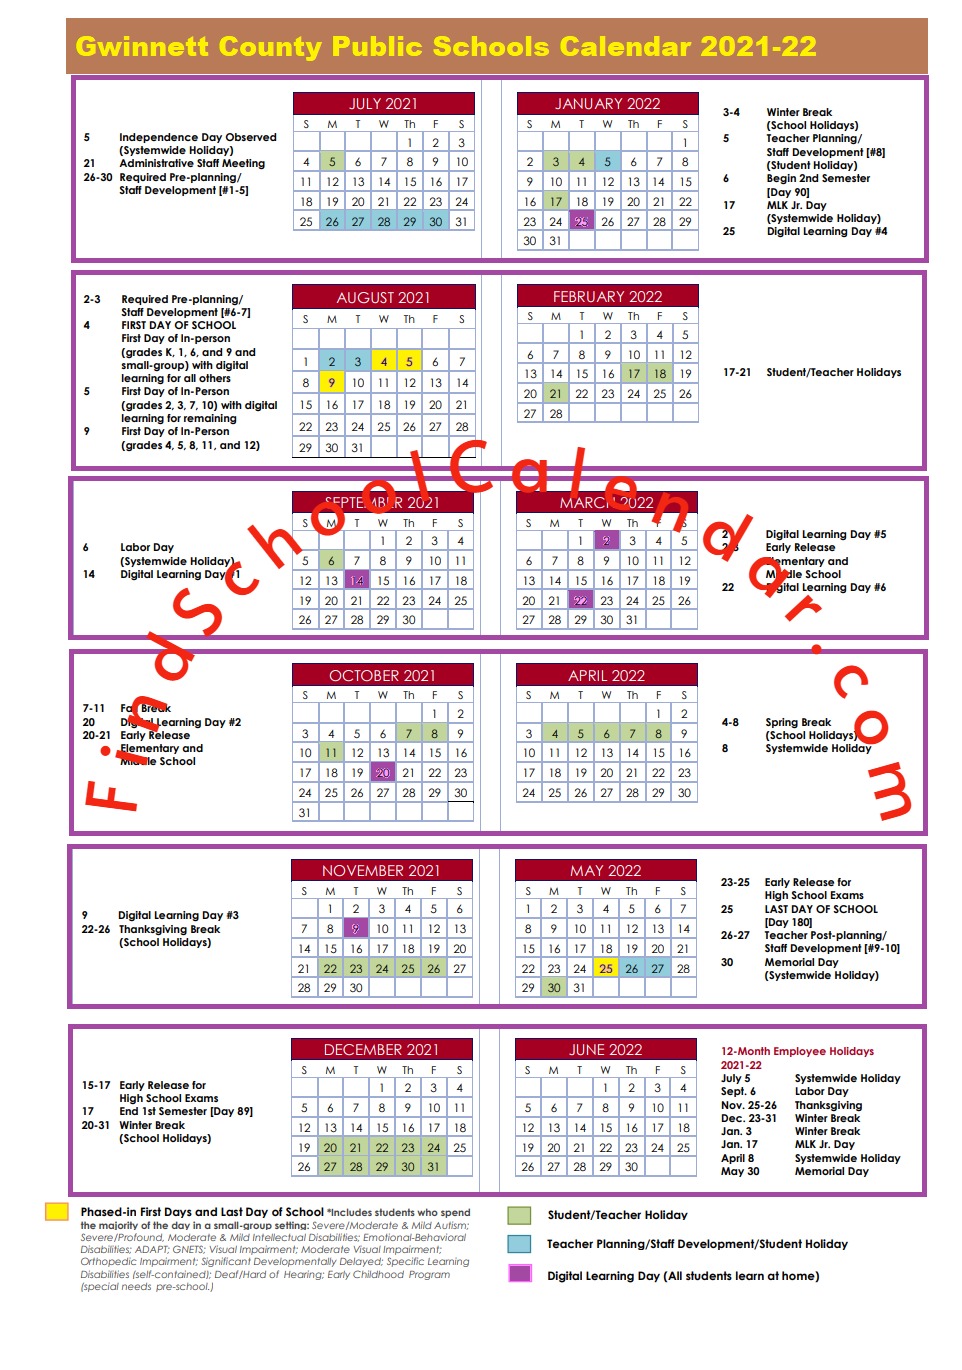 Gwinnett Tech Fall 2022 Calendar Gwinnett County School Calendar 2021-2022 | Holidays & Break Schedule